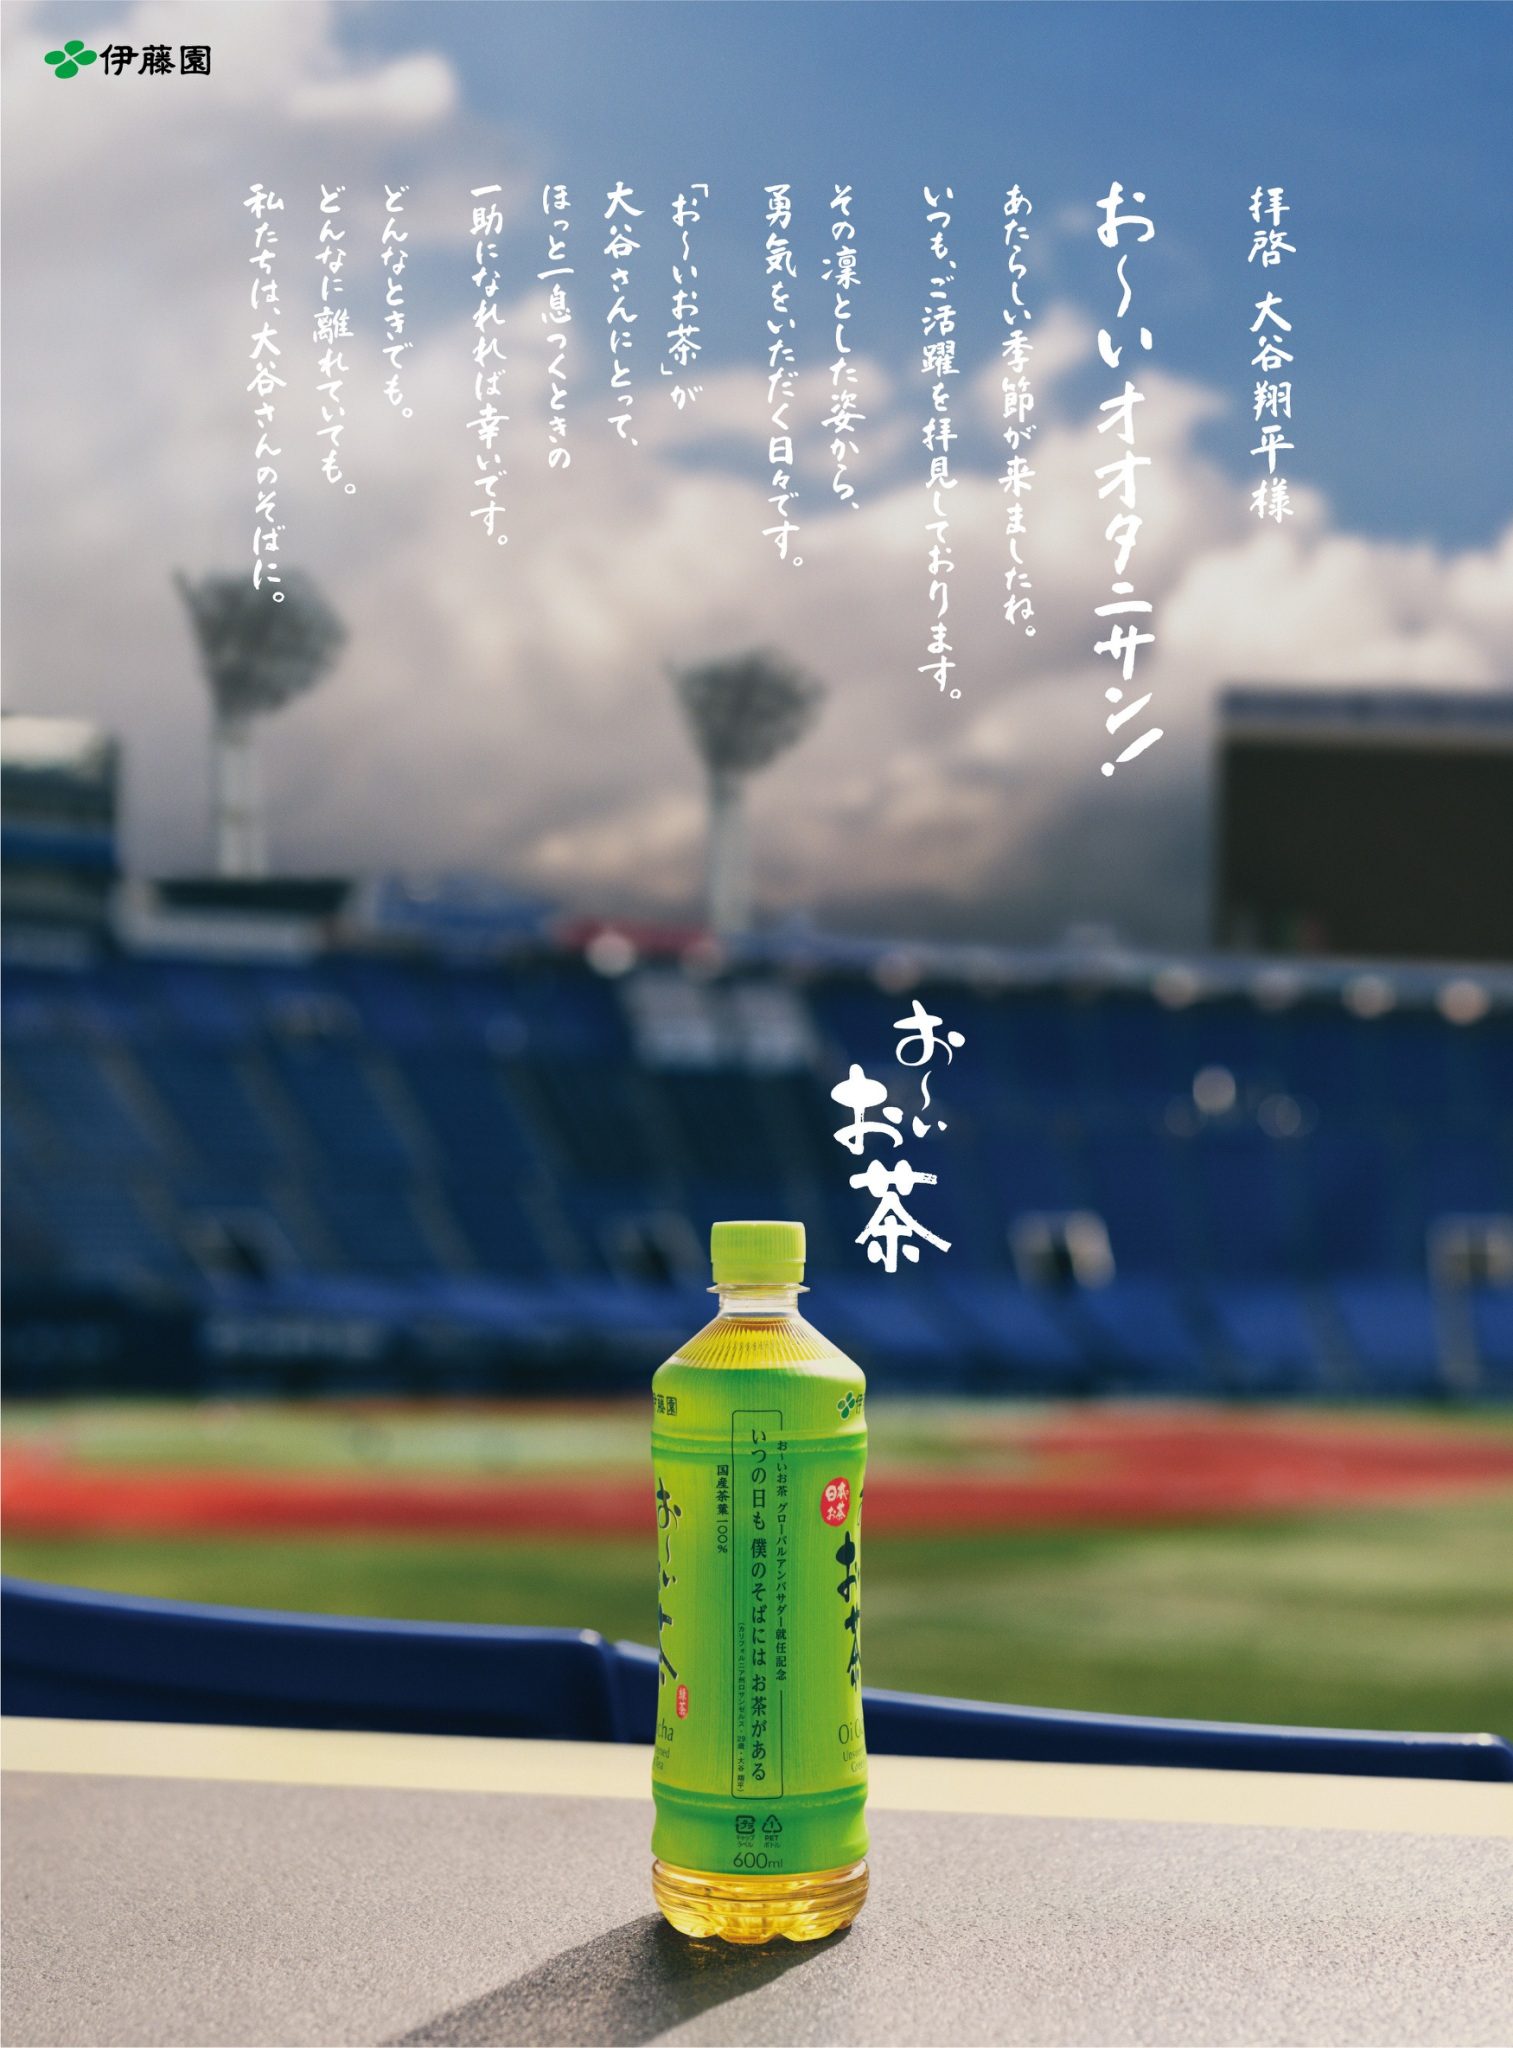 人氣日本茶品牌「伊藤園」 親筆信聲援大聯盟球星大谷翔平  雙方簽訂全球合約